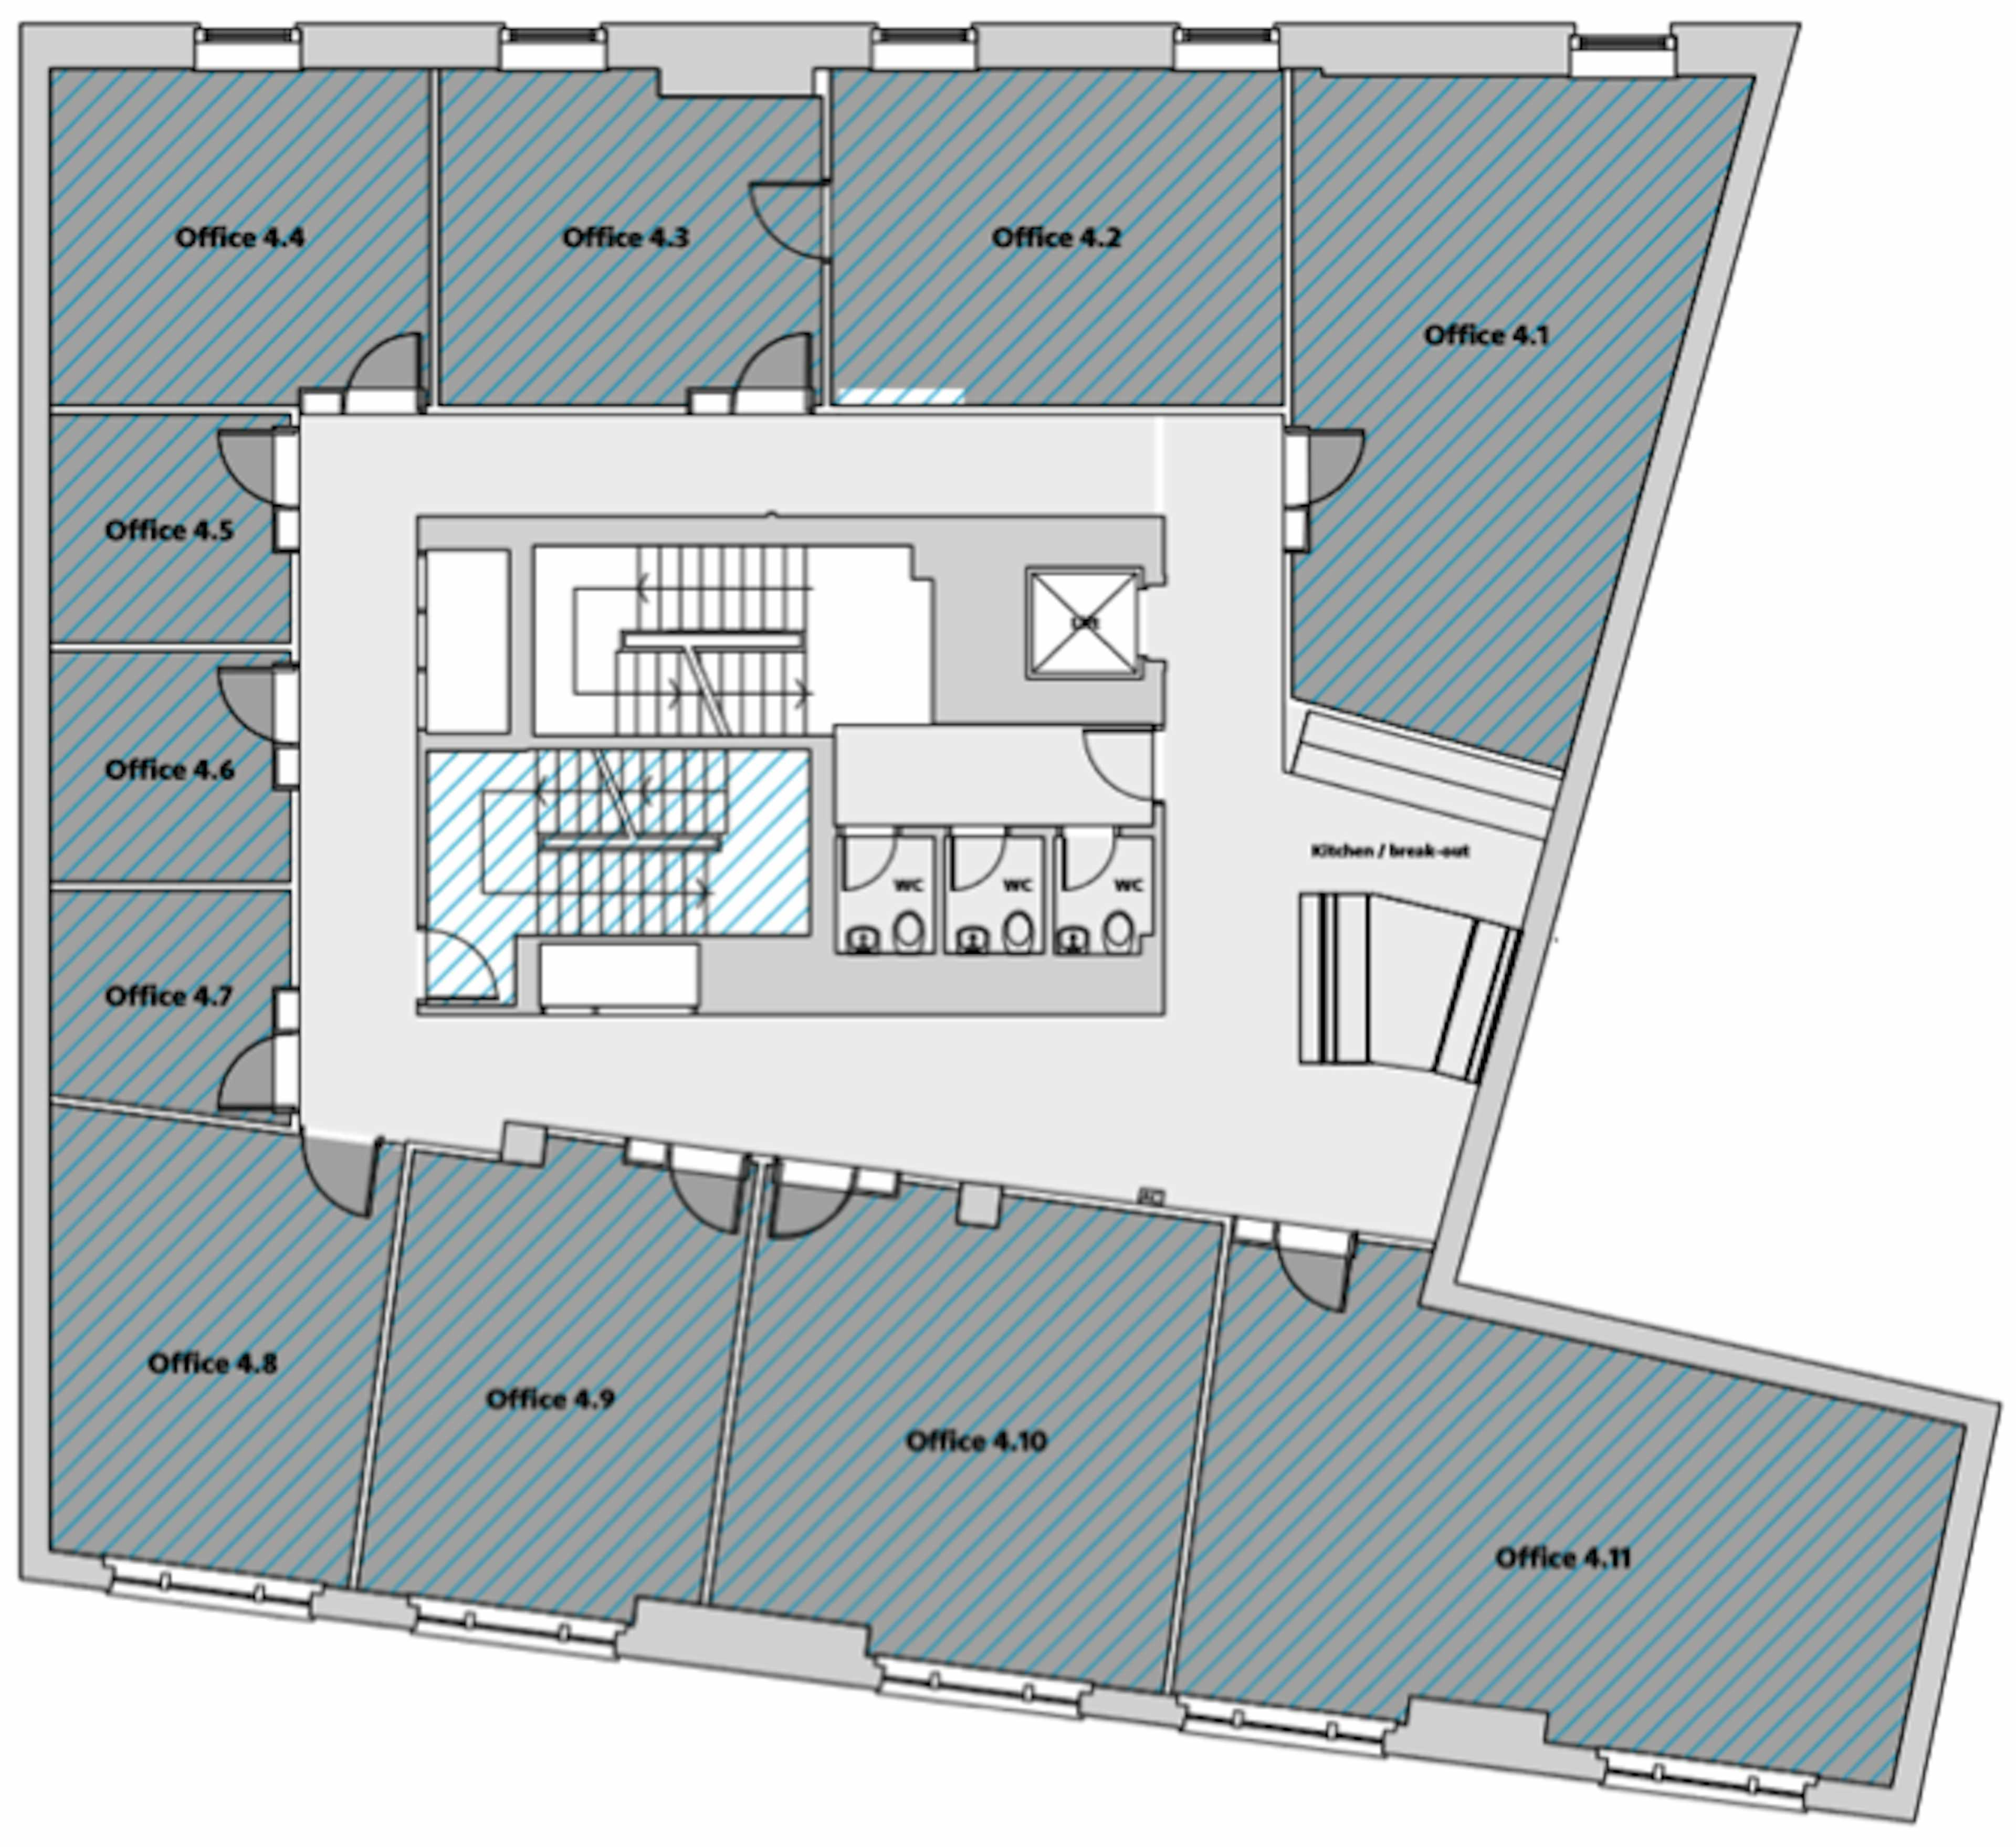 Floor plan of the 4th floor